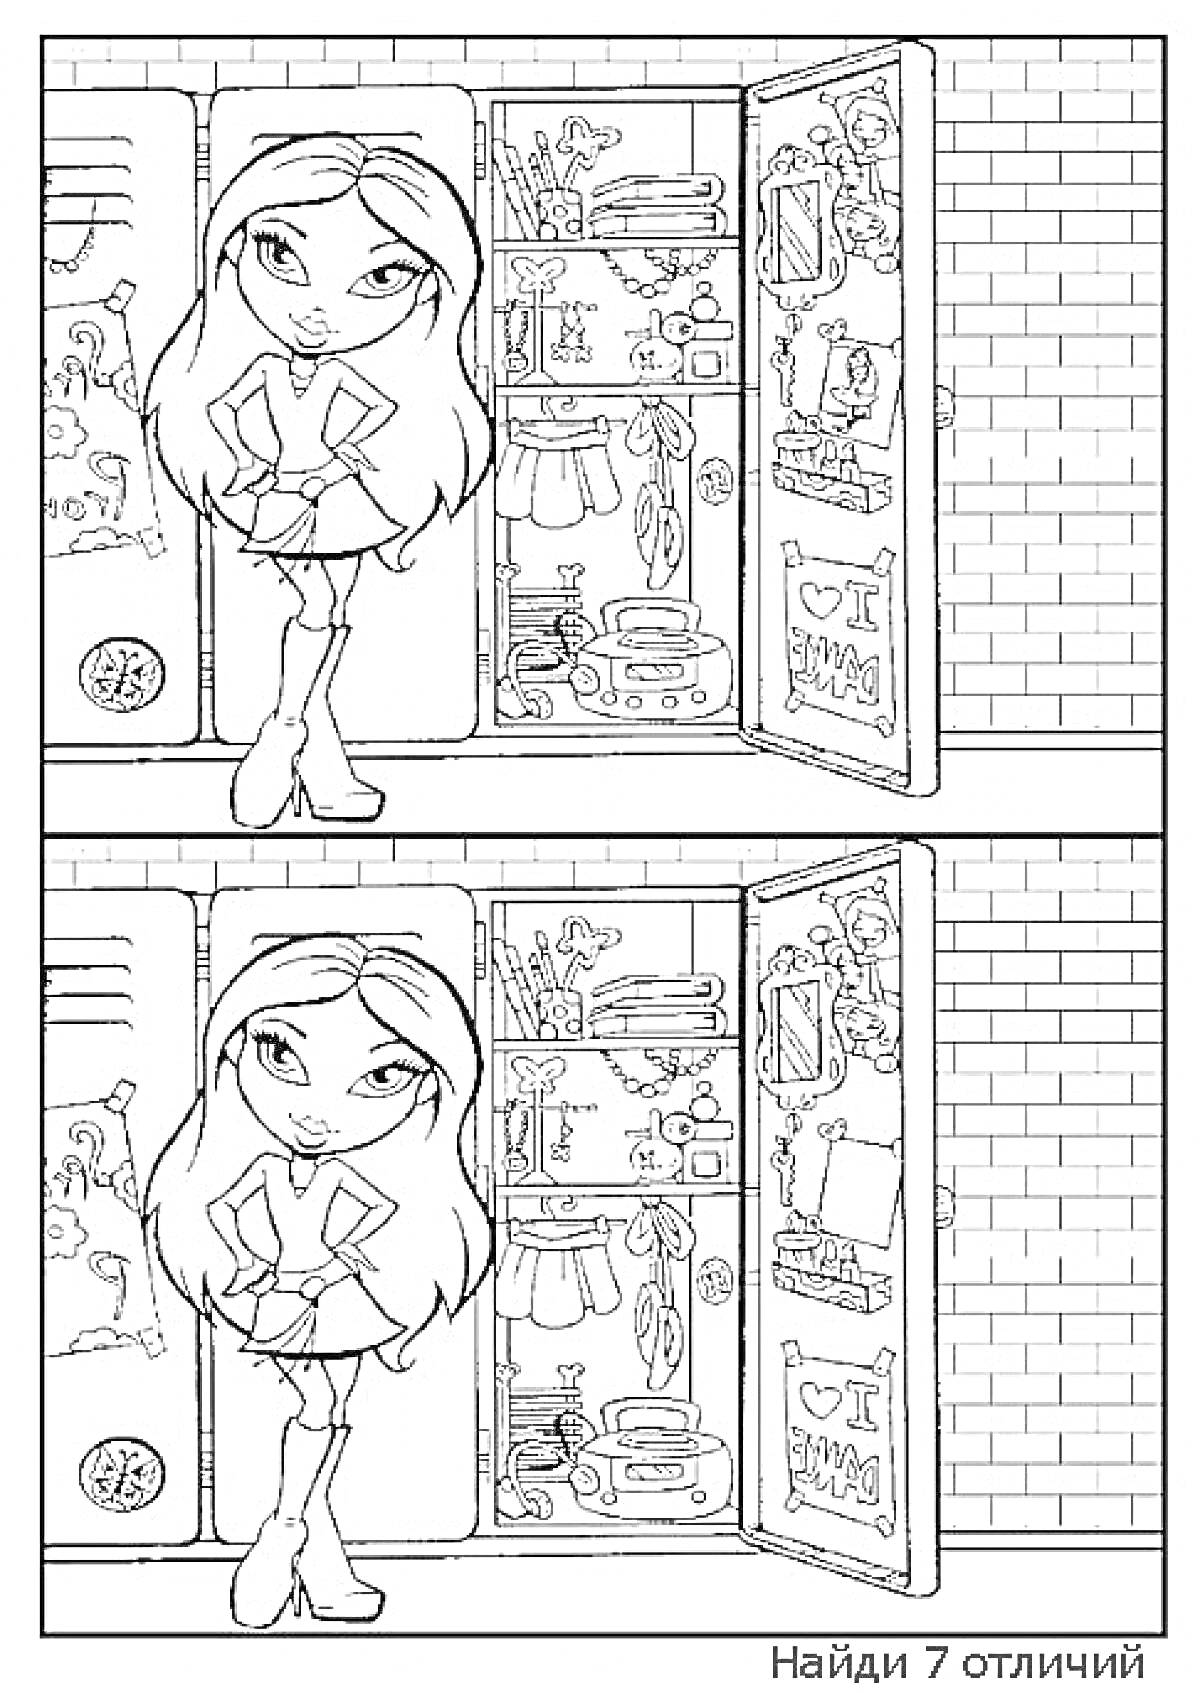 Раскраска Найди отличия в картинках с девочкой перед школьными шкафчиками